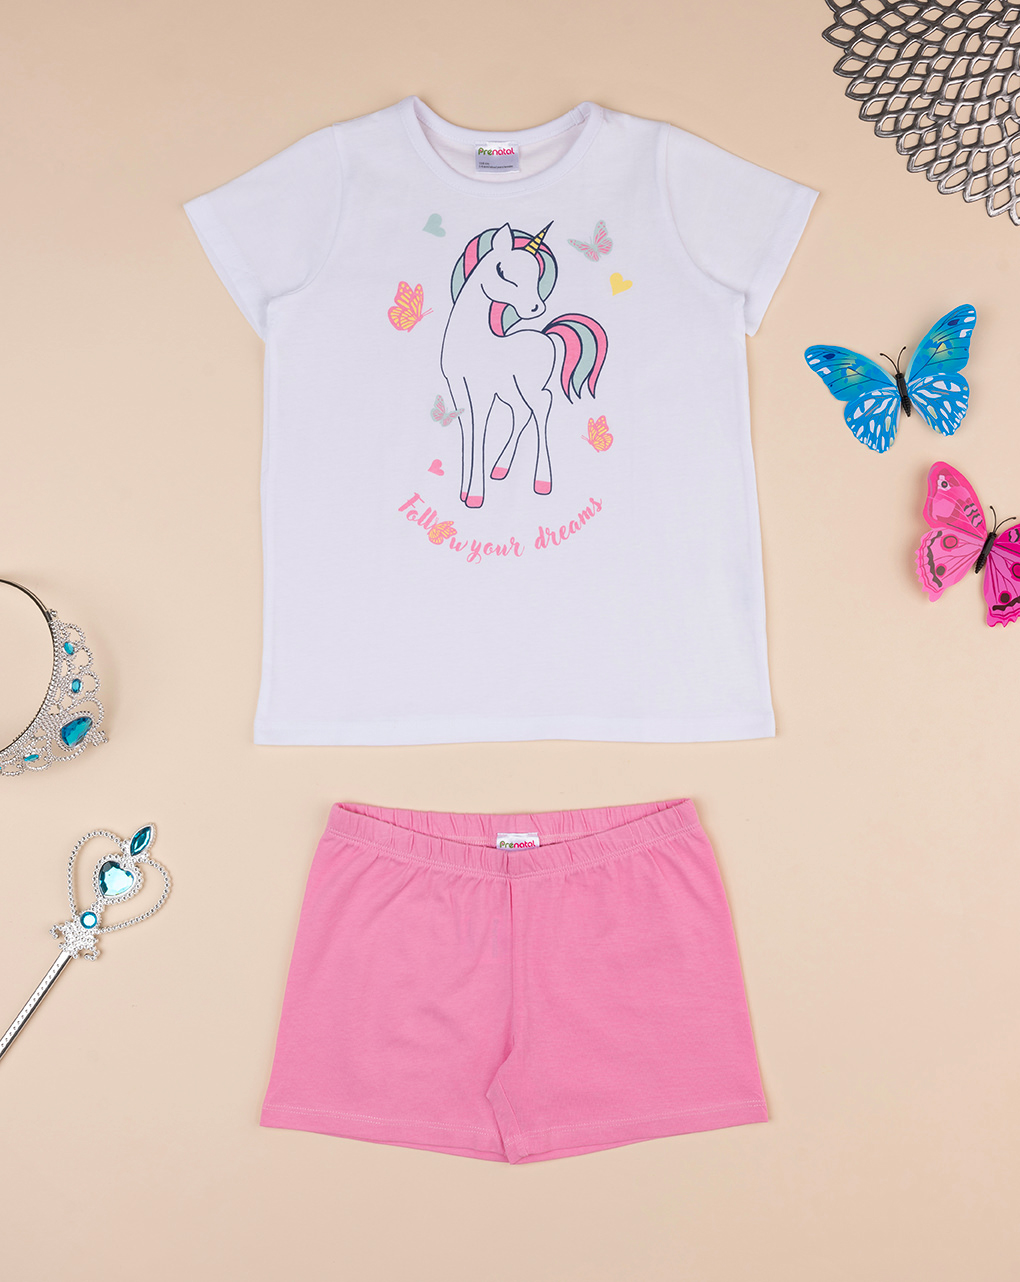 παιδική πιτζάμα λευκή/ροζ με μονόκερο για κορίτσι